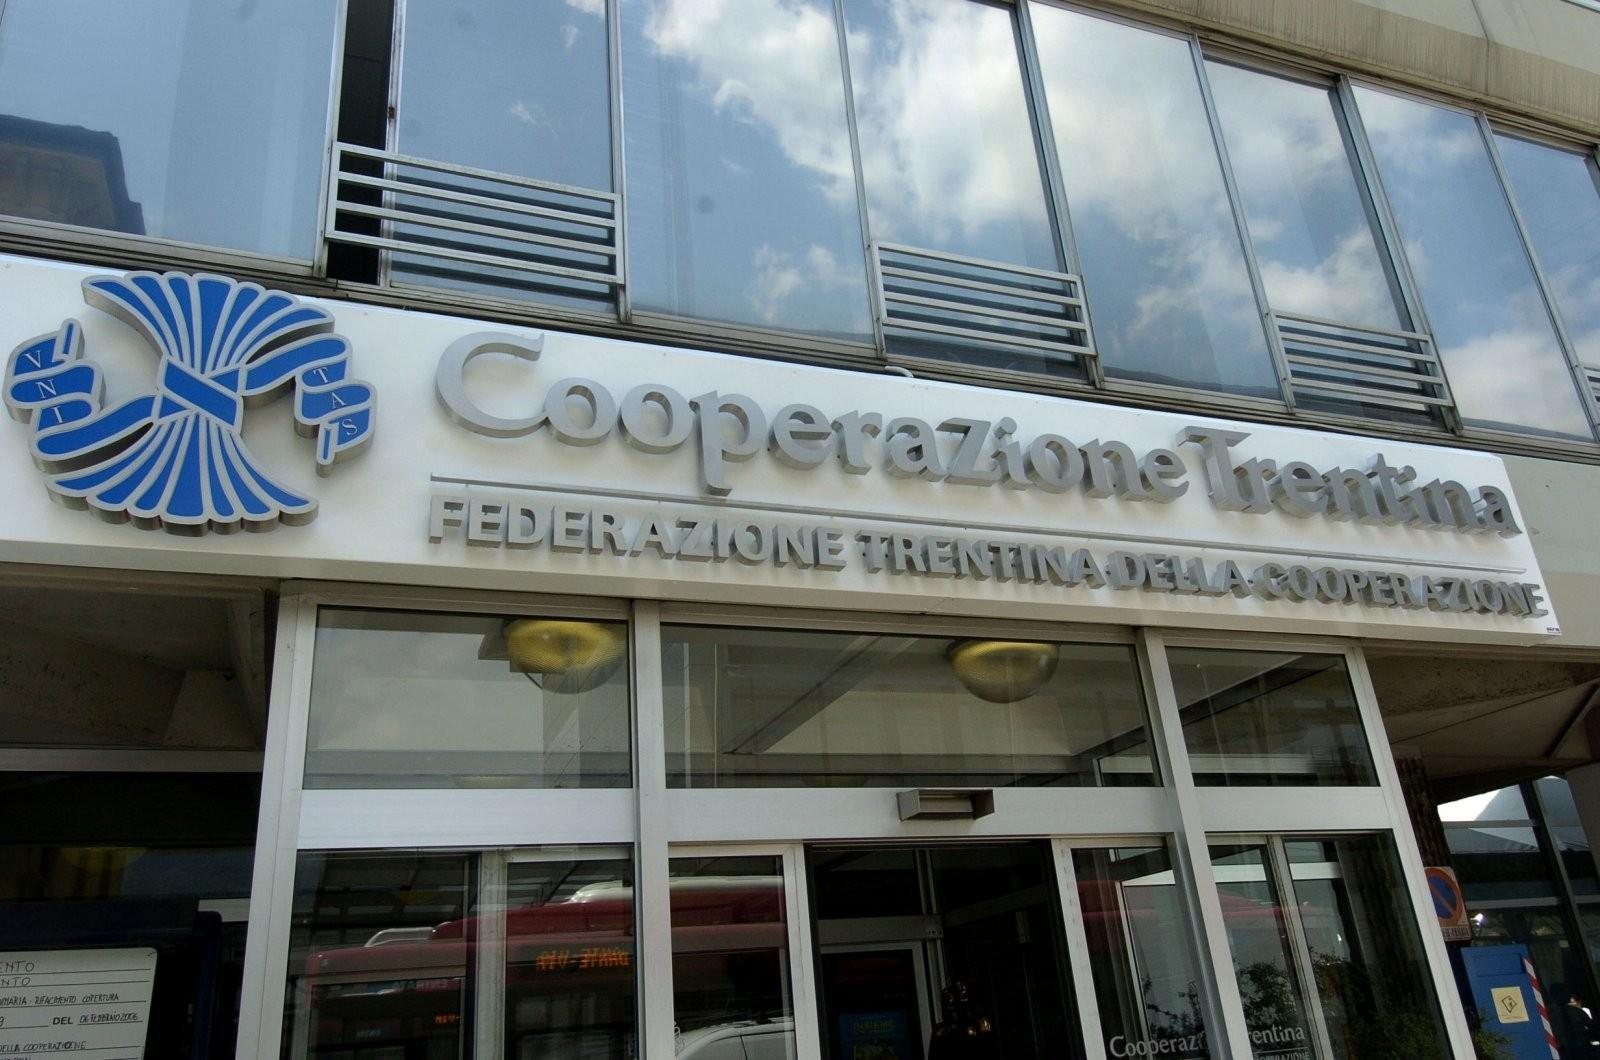 La sesta sezione del Consiglio di Stato ha annullato il provvedimento sanzionatorio emesso a suo tempo dall’Autorità Garante della Concorrenza e del Mercato nei confronti della Federazione Trentina della Cooperazione. Annullata la multa da 600mila euro.